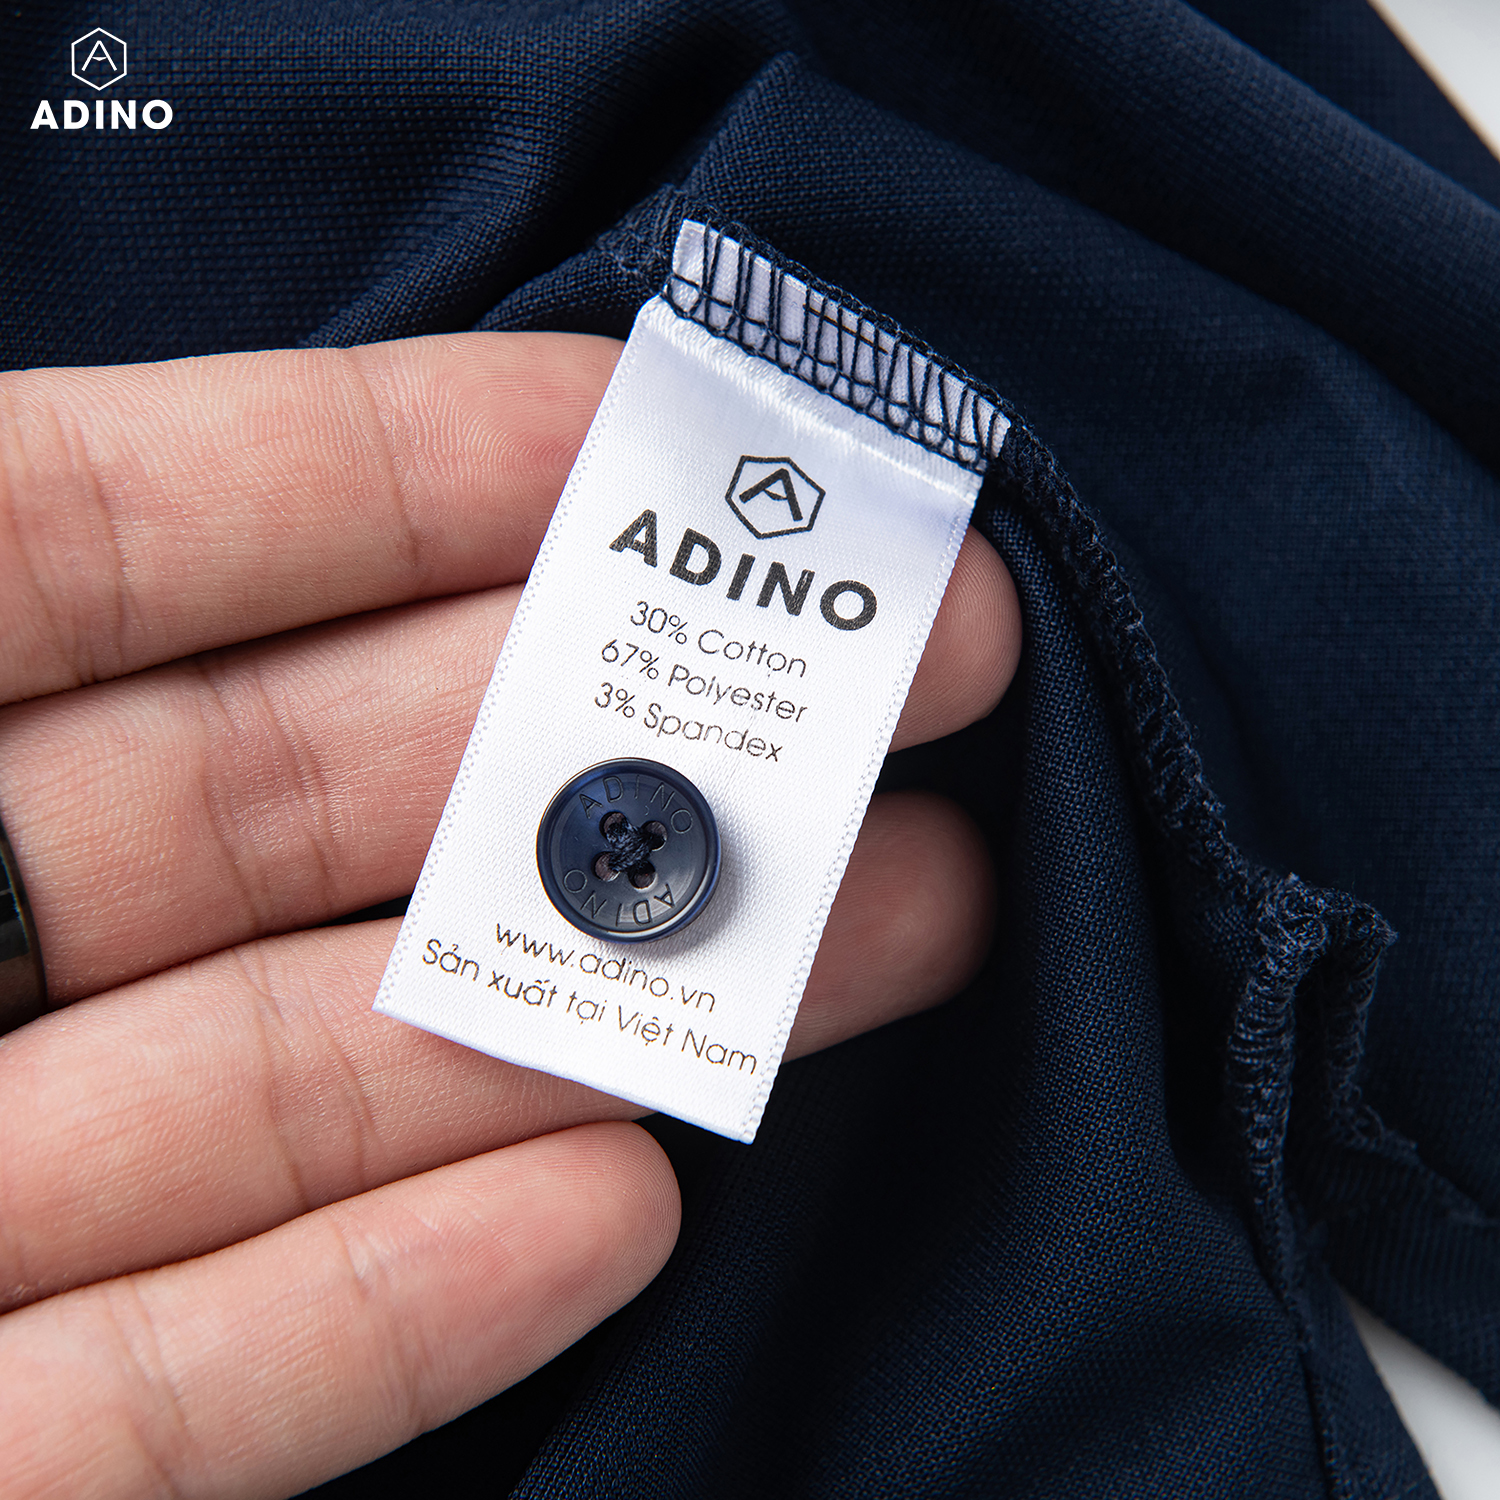 Áo polo nữ màu xanh đen phối viền ADINO vải polyester cotton không bai xù dáng slimfit công sở hơi ôm trẻ trung APN04